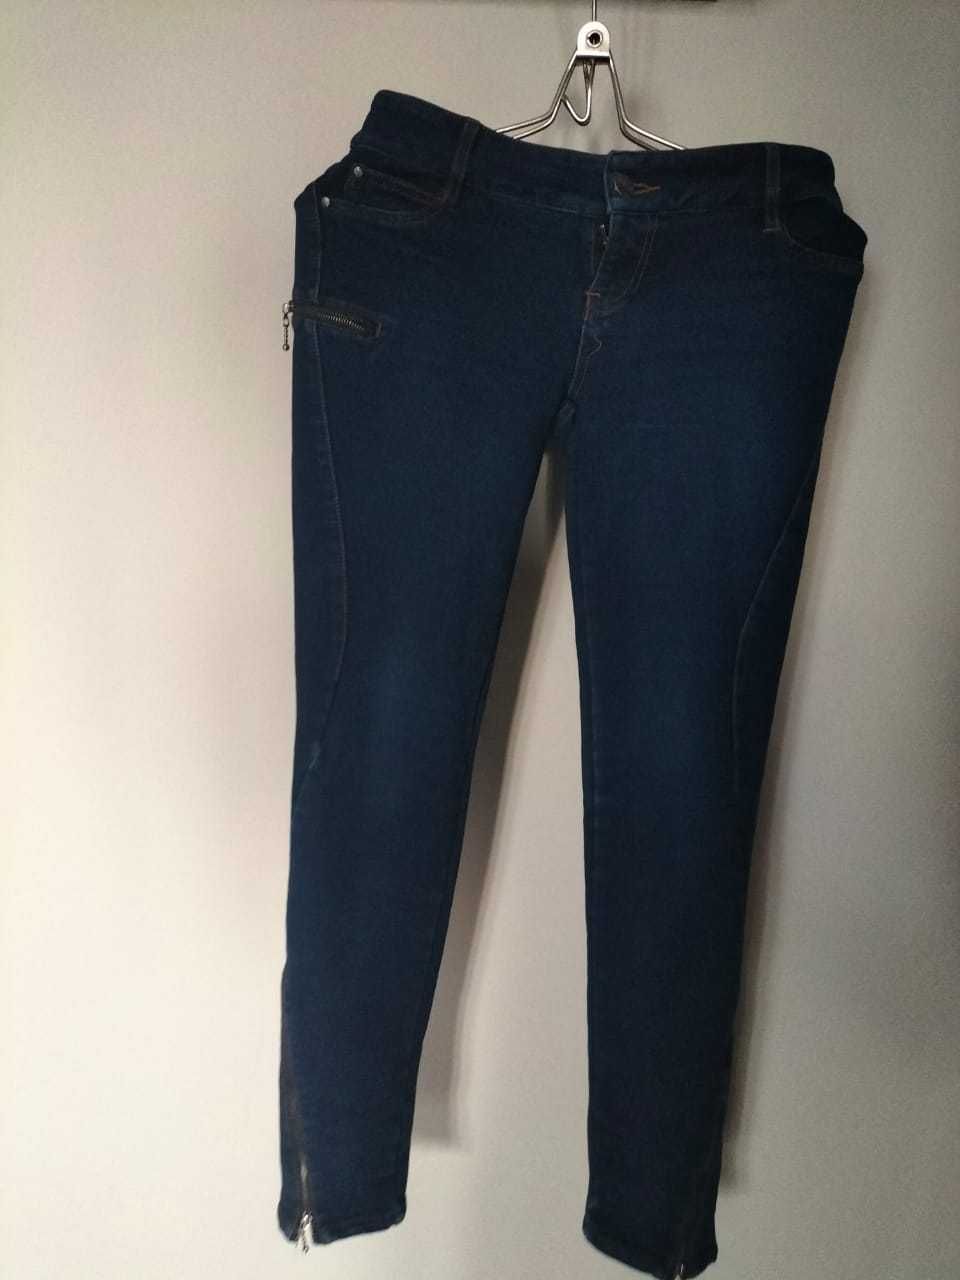 отличного качества джинсы 2 штуки, дешево. 44-46 размер